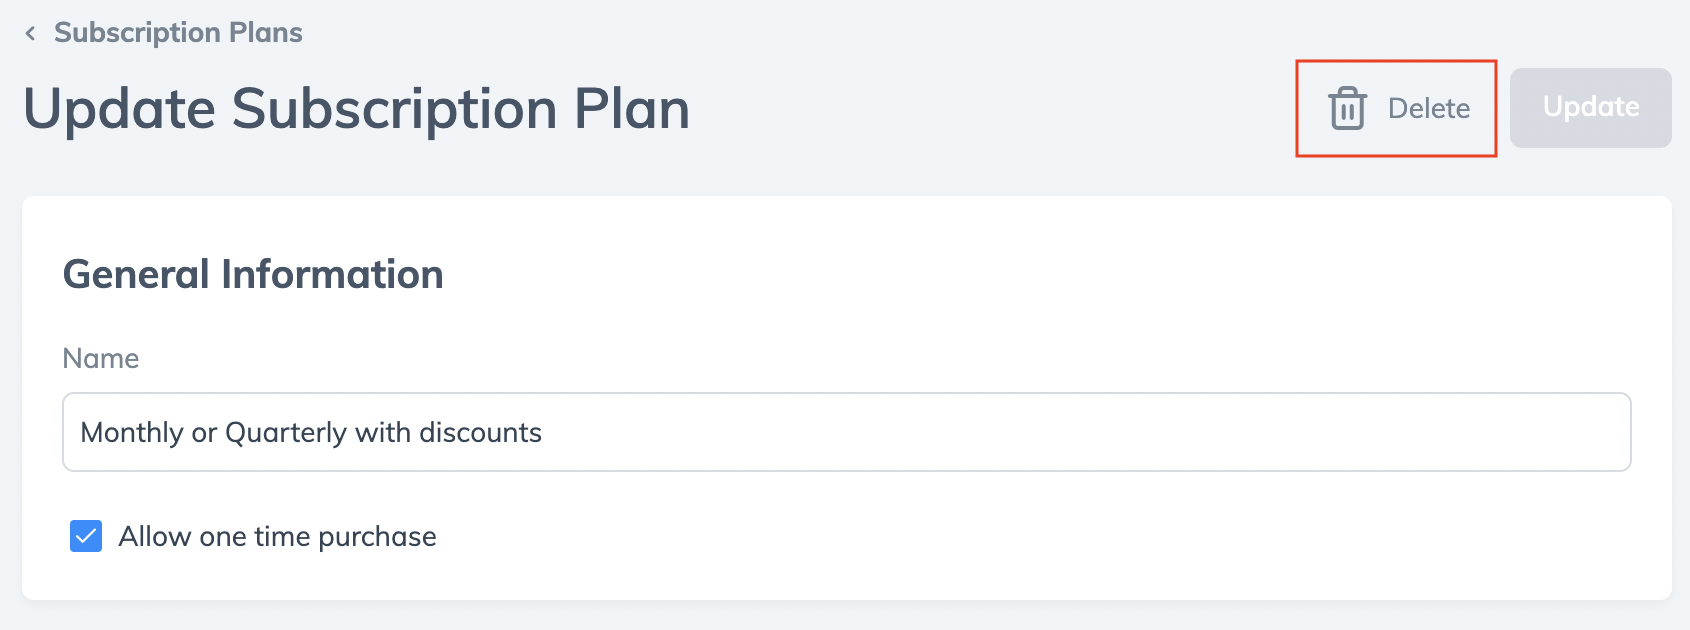 subscription-plans-detele-plan.png